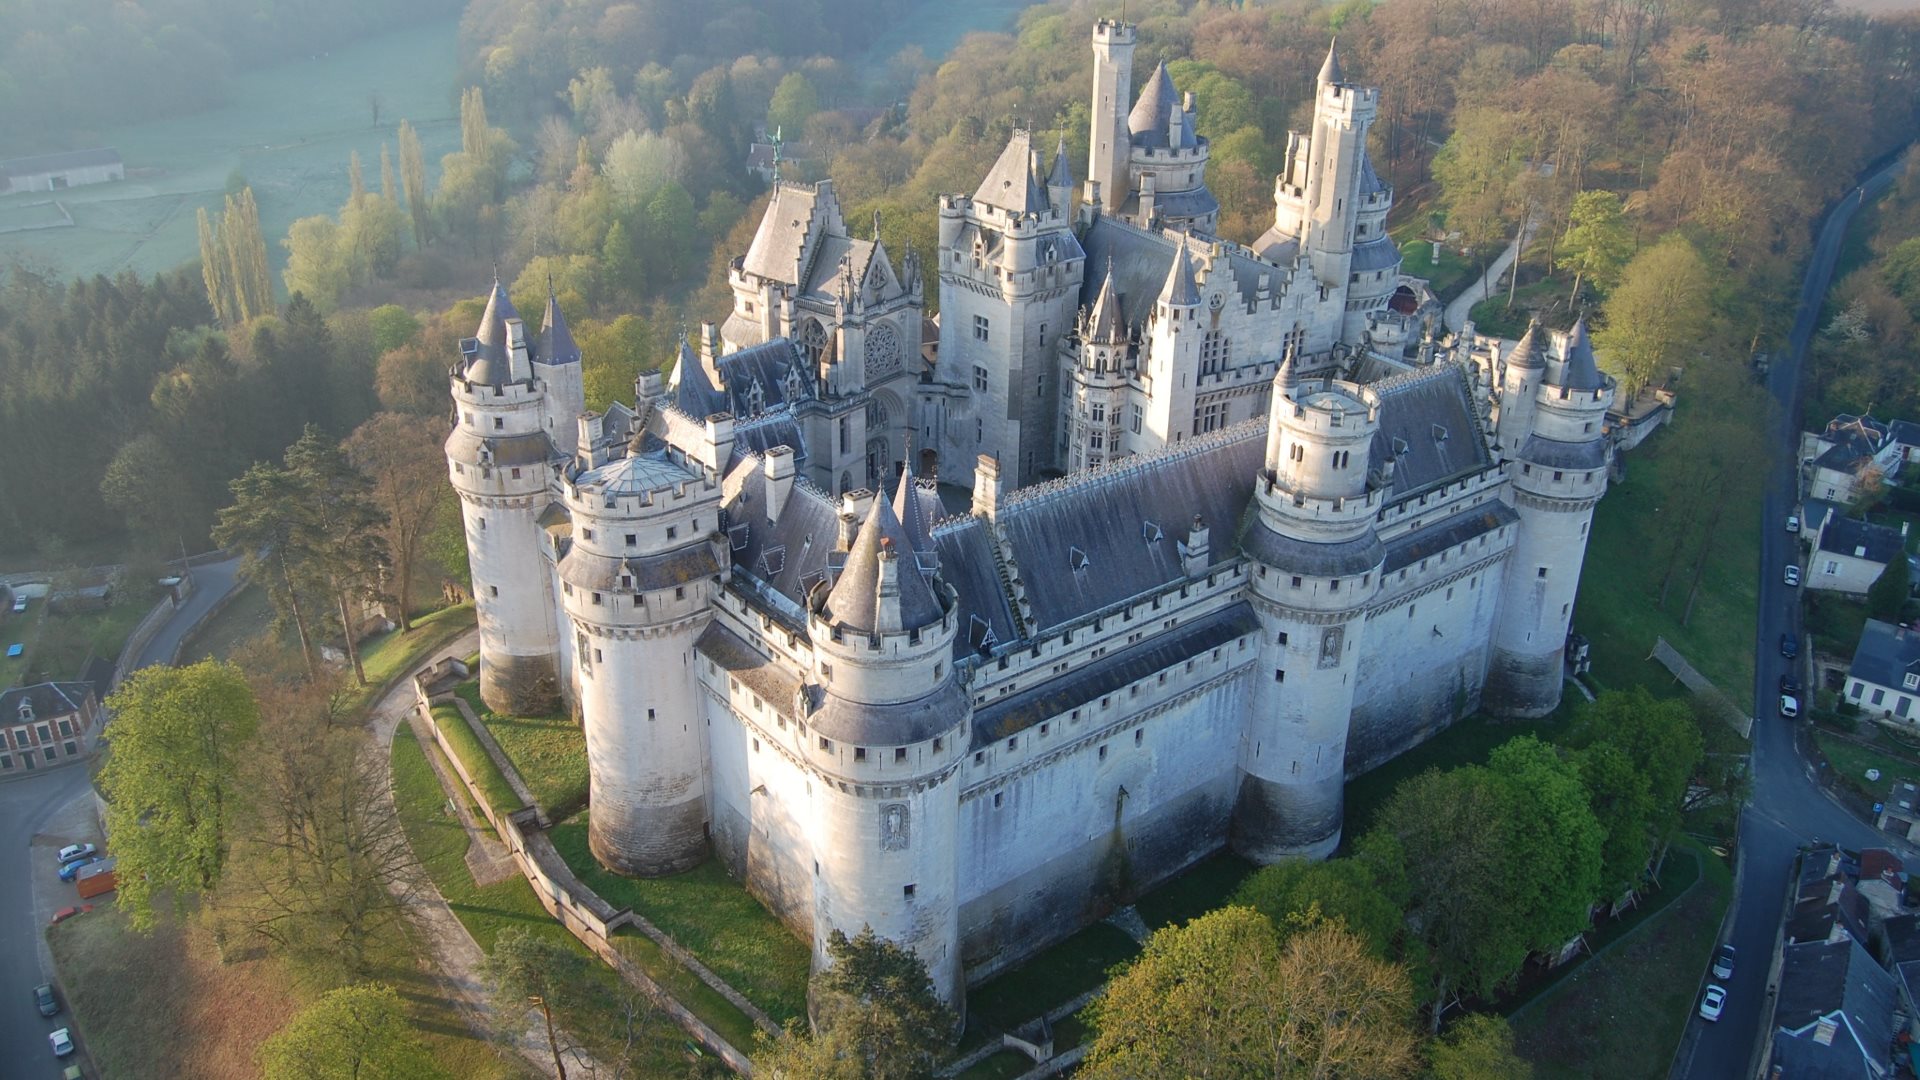 Pierrefonds castle, France - Imgur